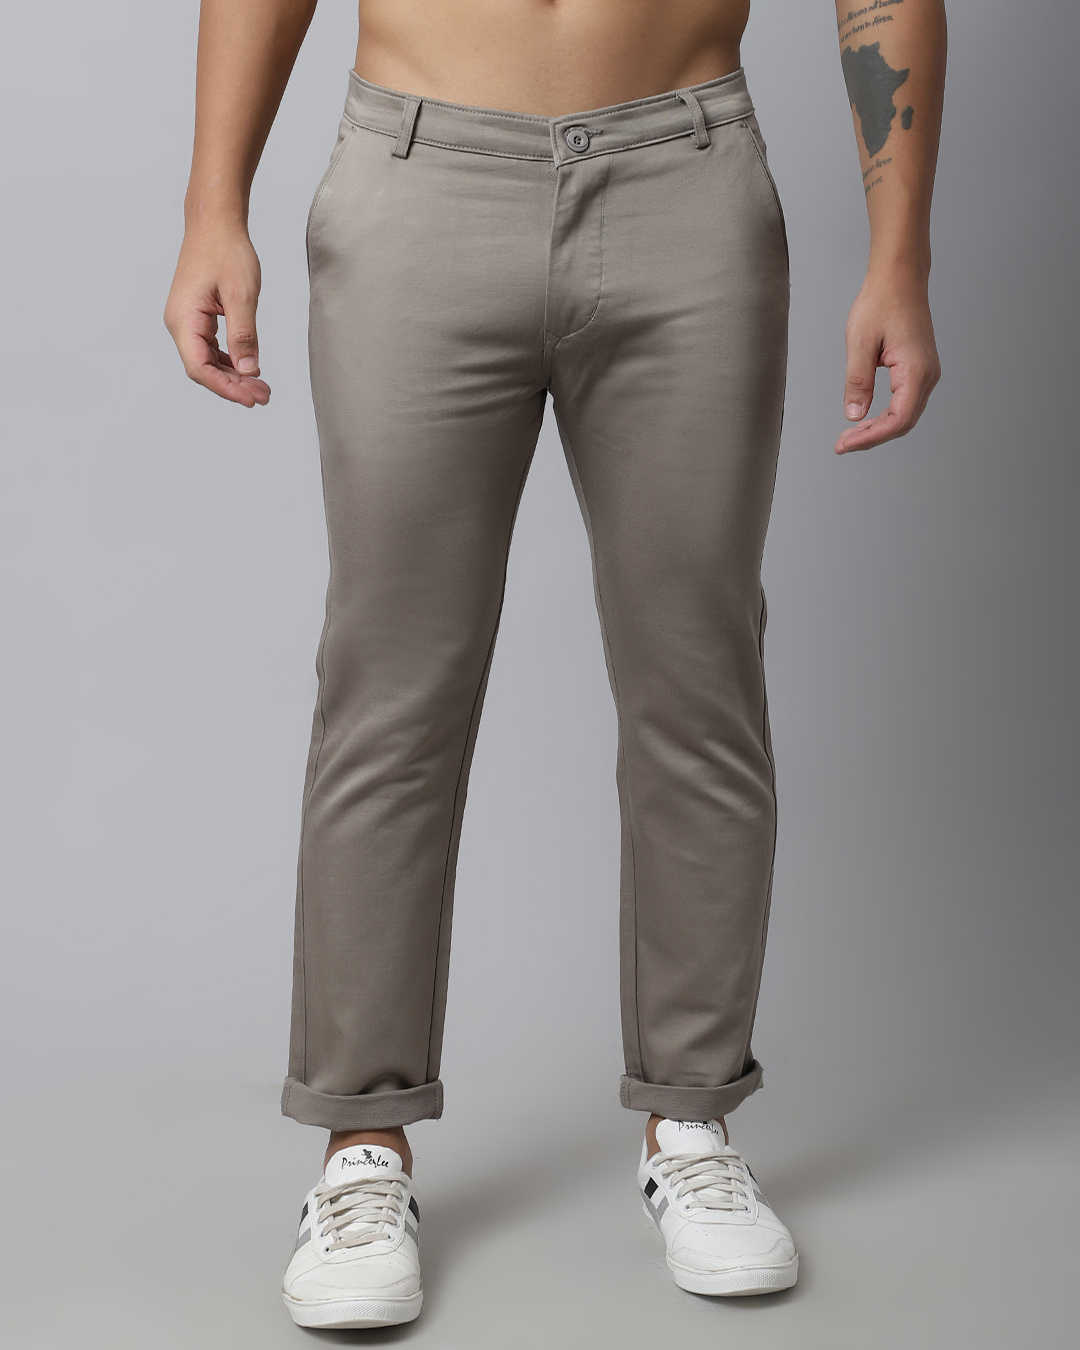 Buy Men's Grey Slim Fit Trousers for Men Grey Online at Bewakoof